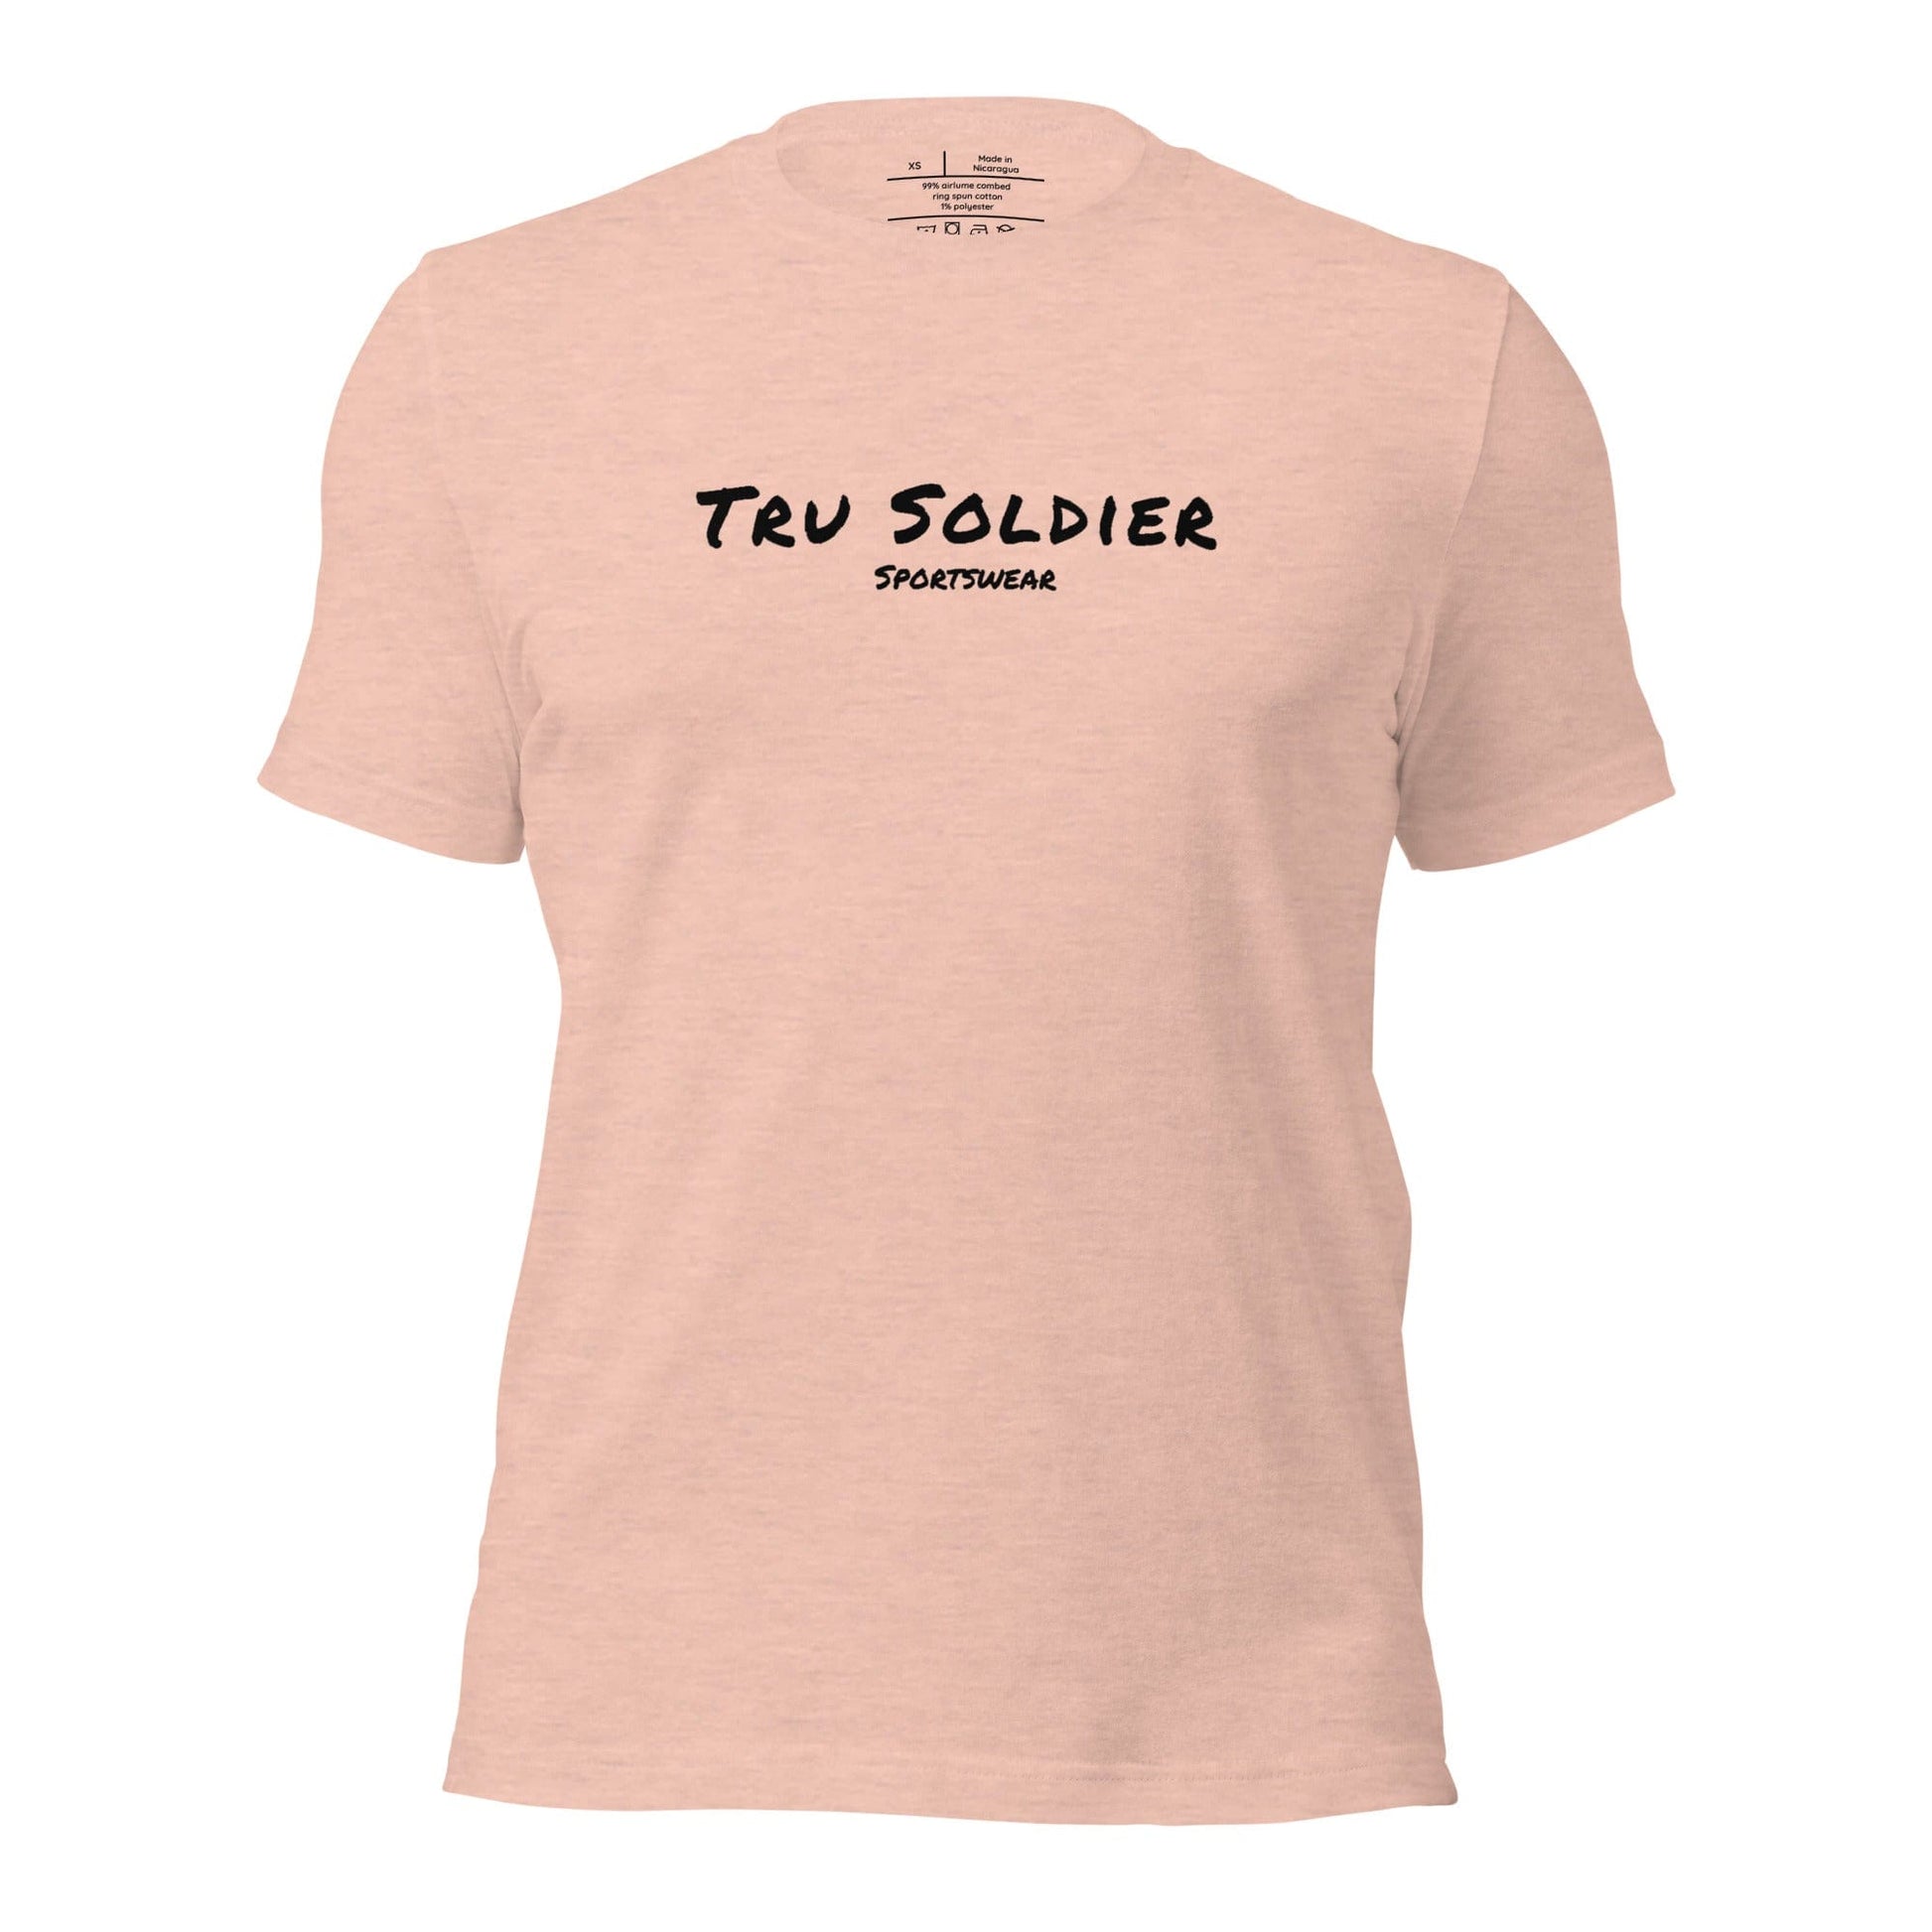 Tru Soldier Sportswear  Heather Prism Peach / XS Unisex t-shirt